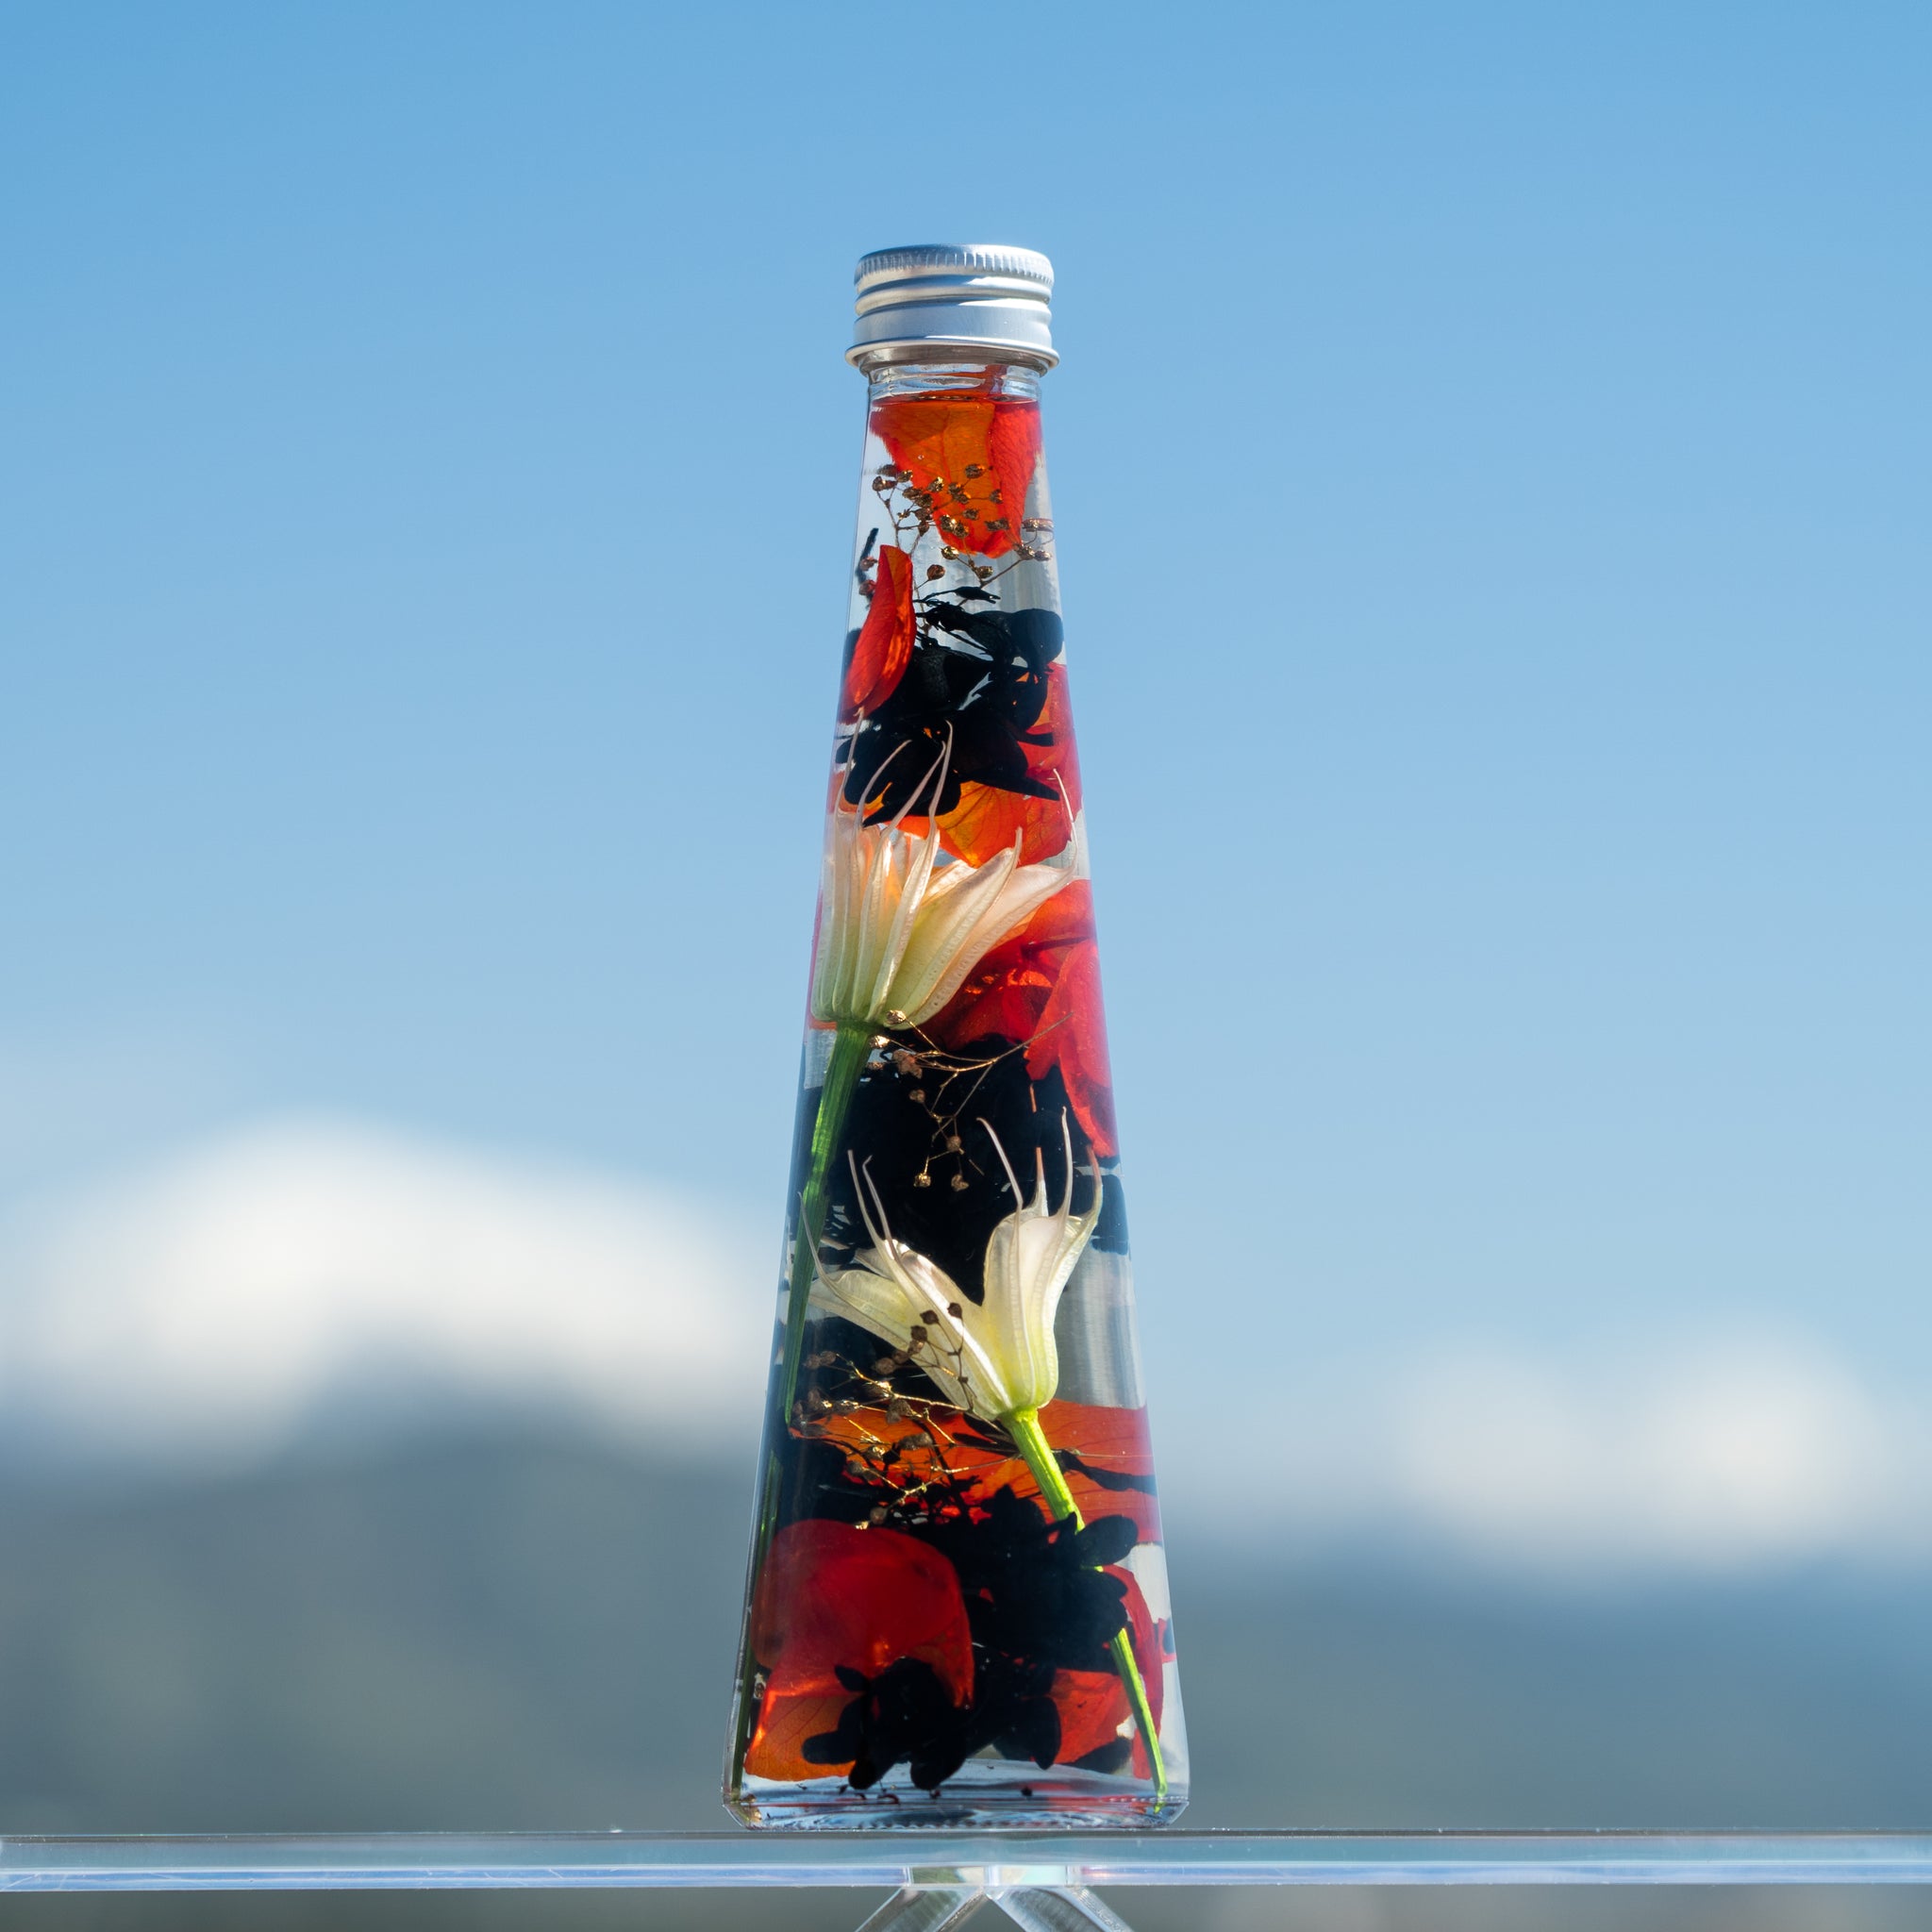 Japanese Herbarium Flower Bottles - Chloé Style Elegance Preserved Flower in Oil